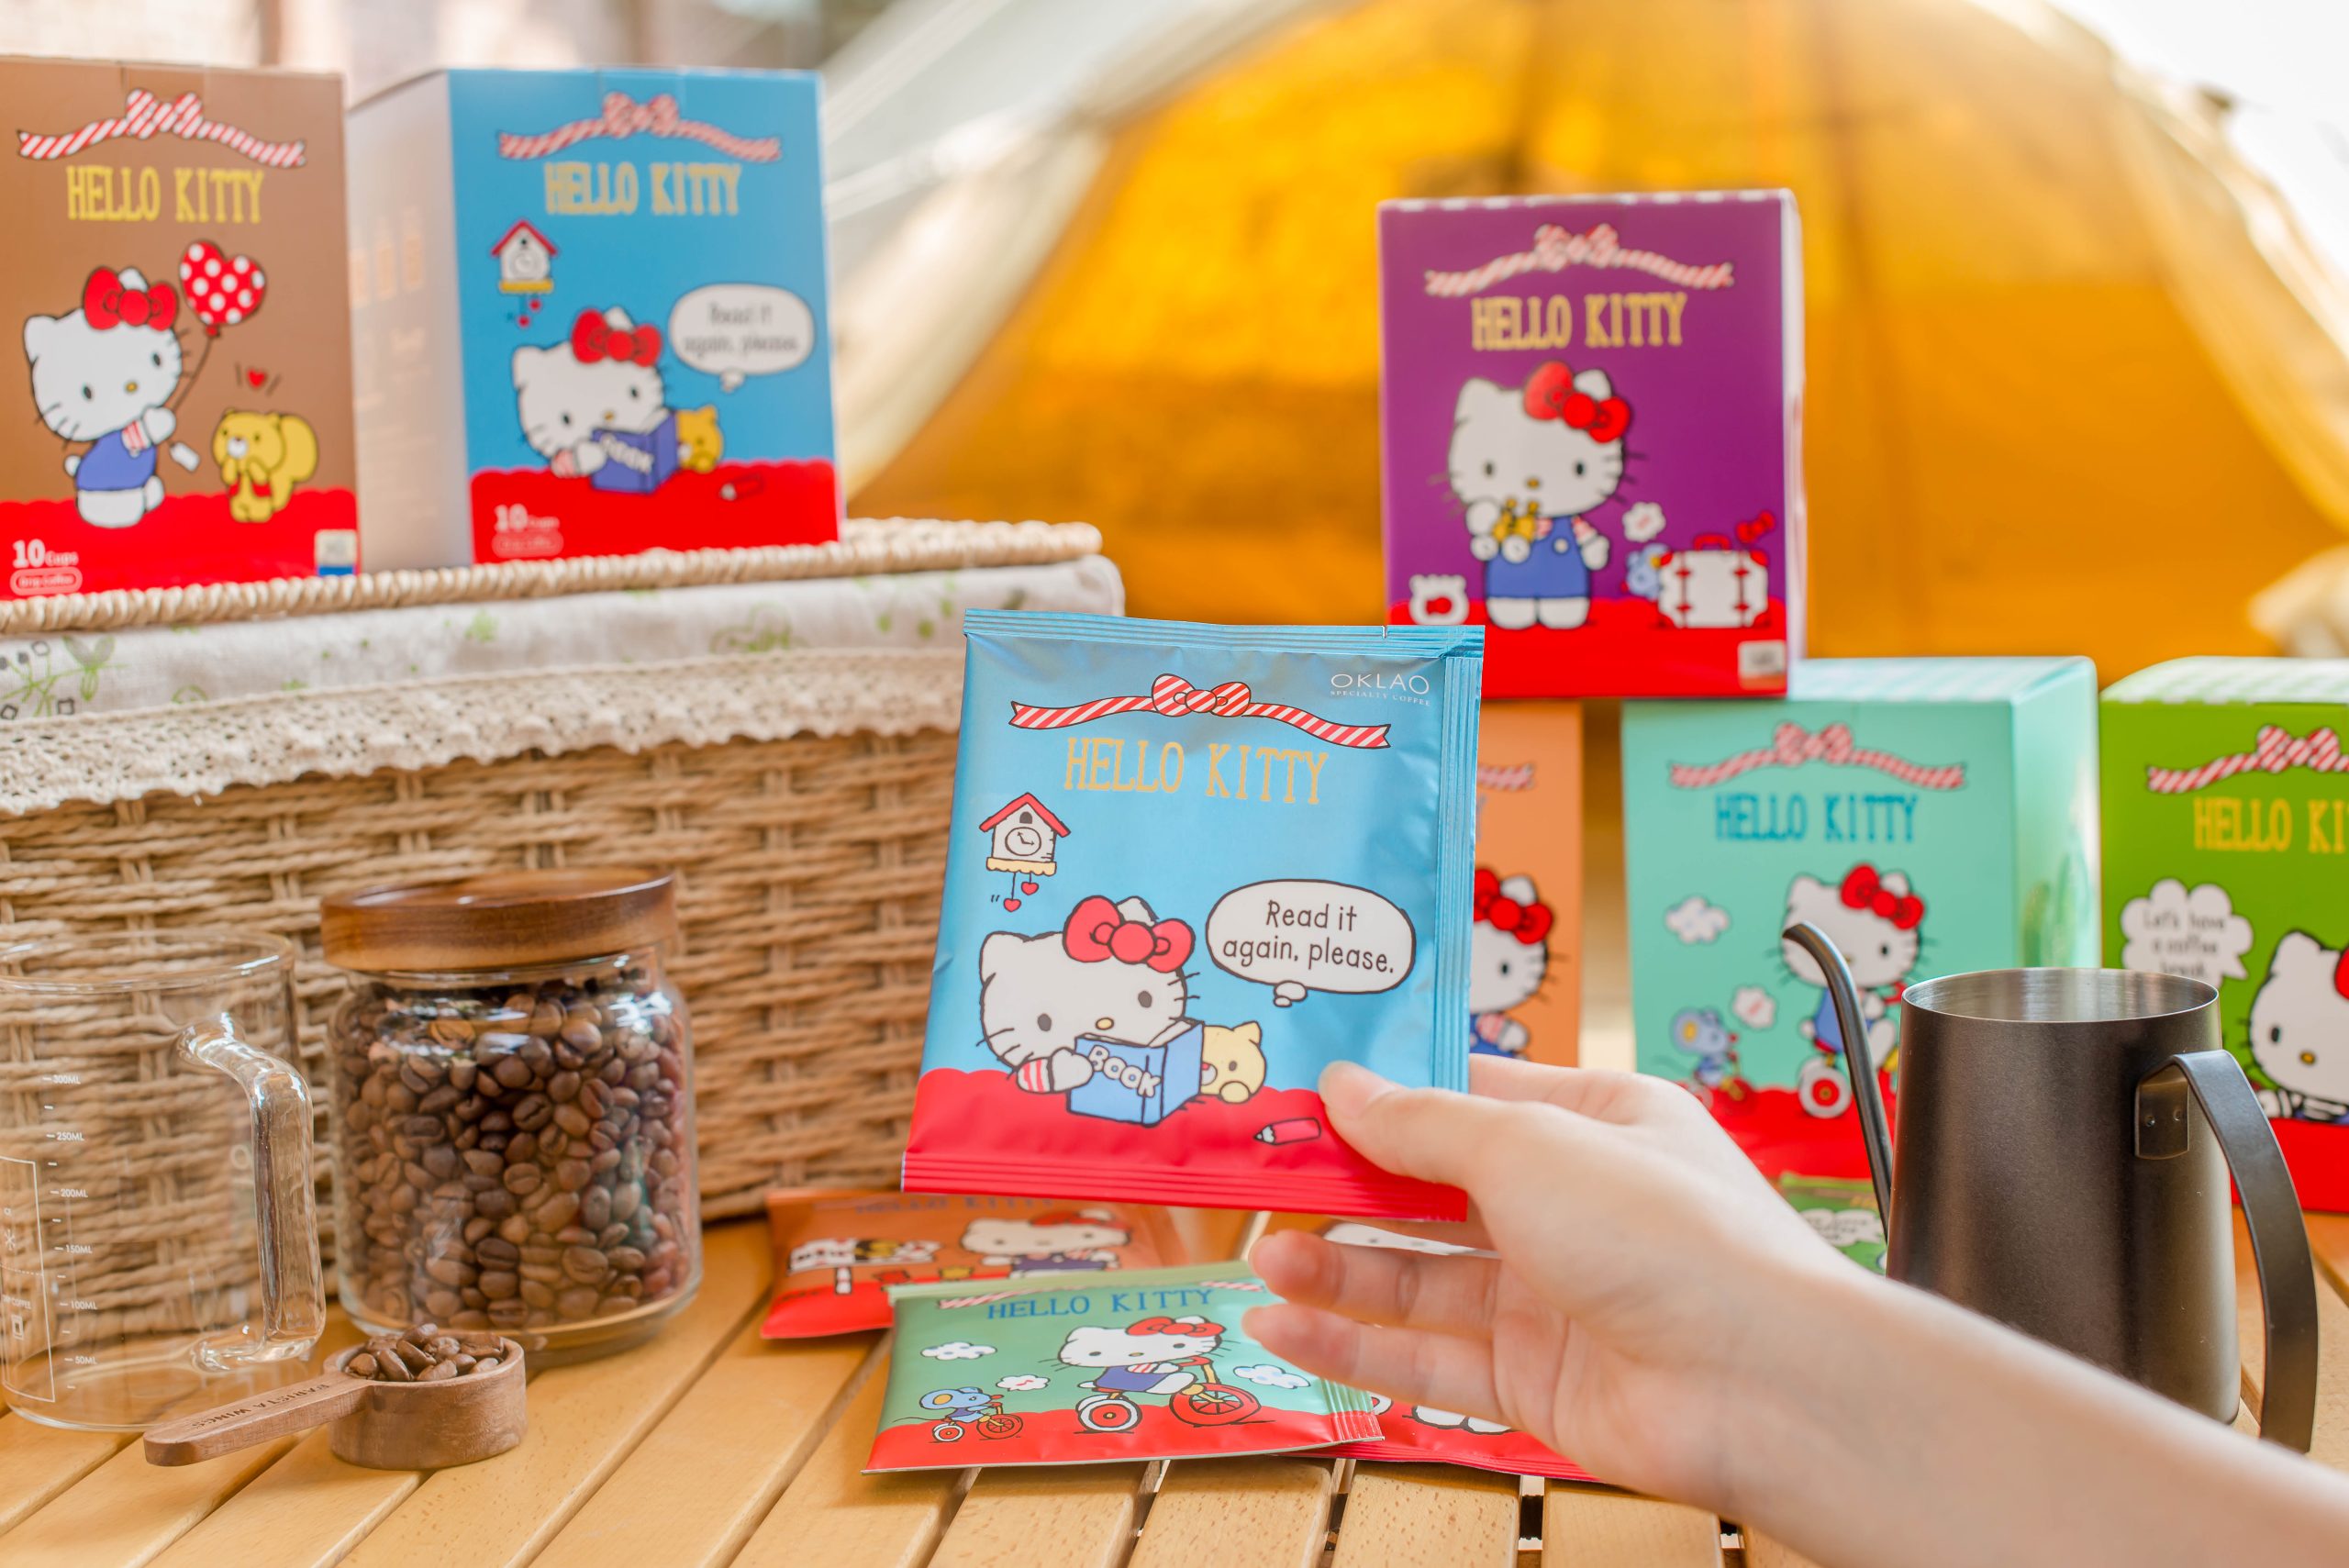 歐客佬 Hello Kitty 聯名精品 濾泡式 掛耳咖啡 禮盒 限量版 Oklao Hello Kitty co-branded boutique filter-type ear-hanging coffee gift box limited edition